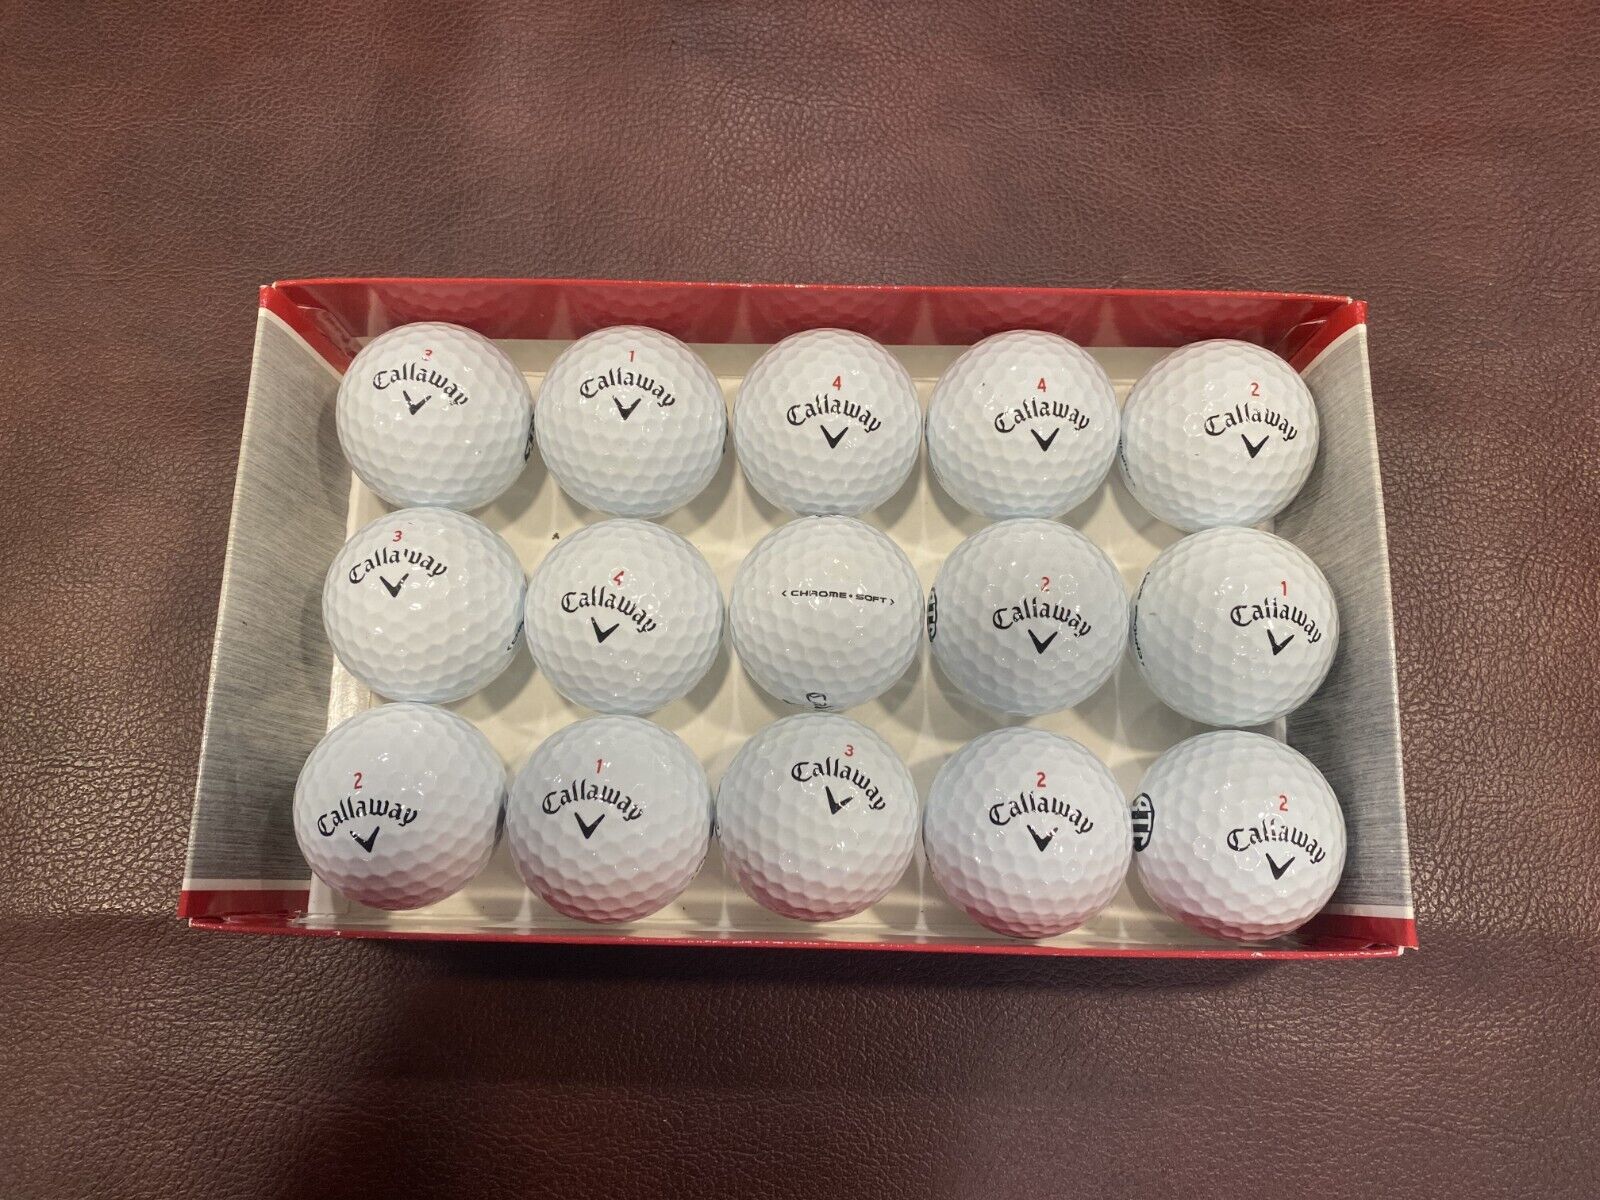 Callaway Chrome Soft X Golf Balls - 15 Balls